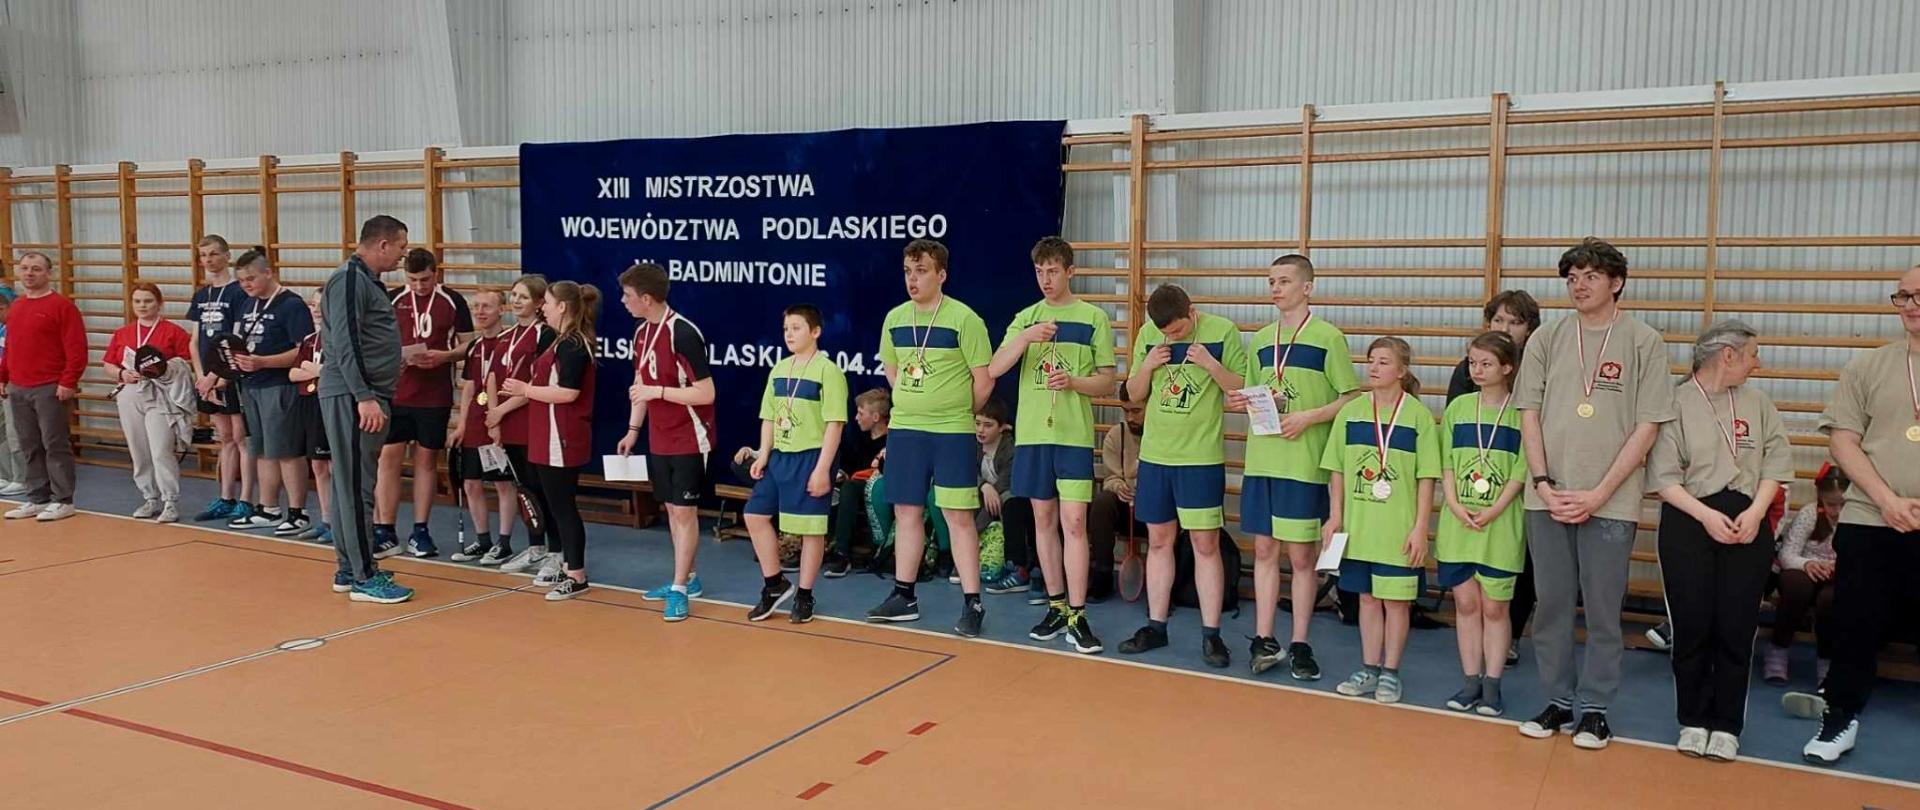 Mistrzostwa Województwa Podlaskiego w Badmintonie 